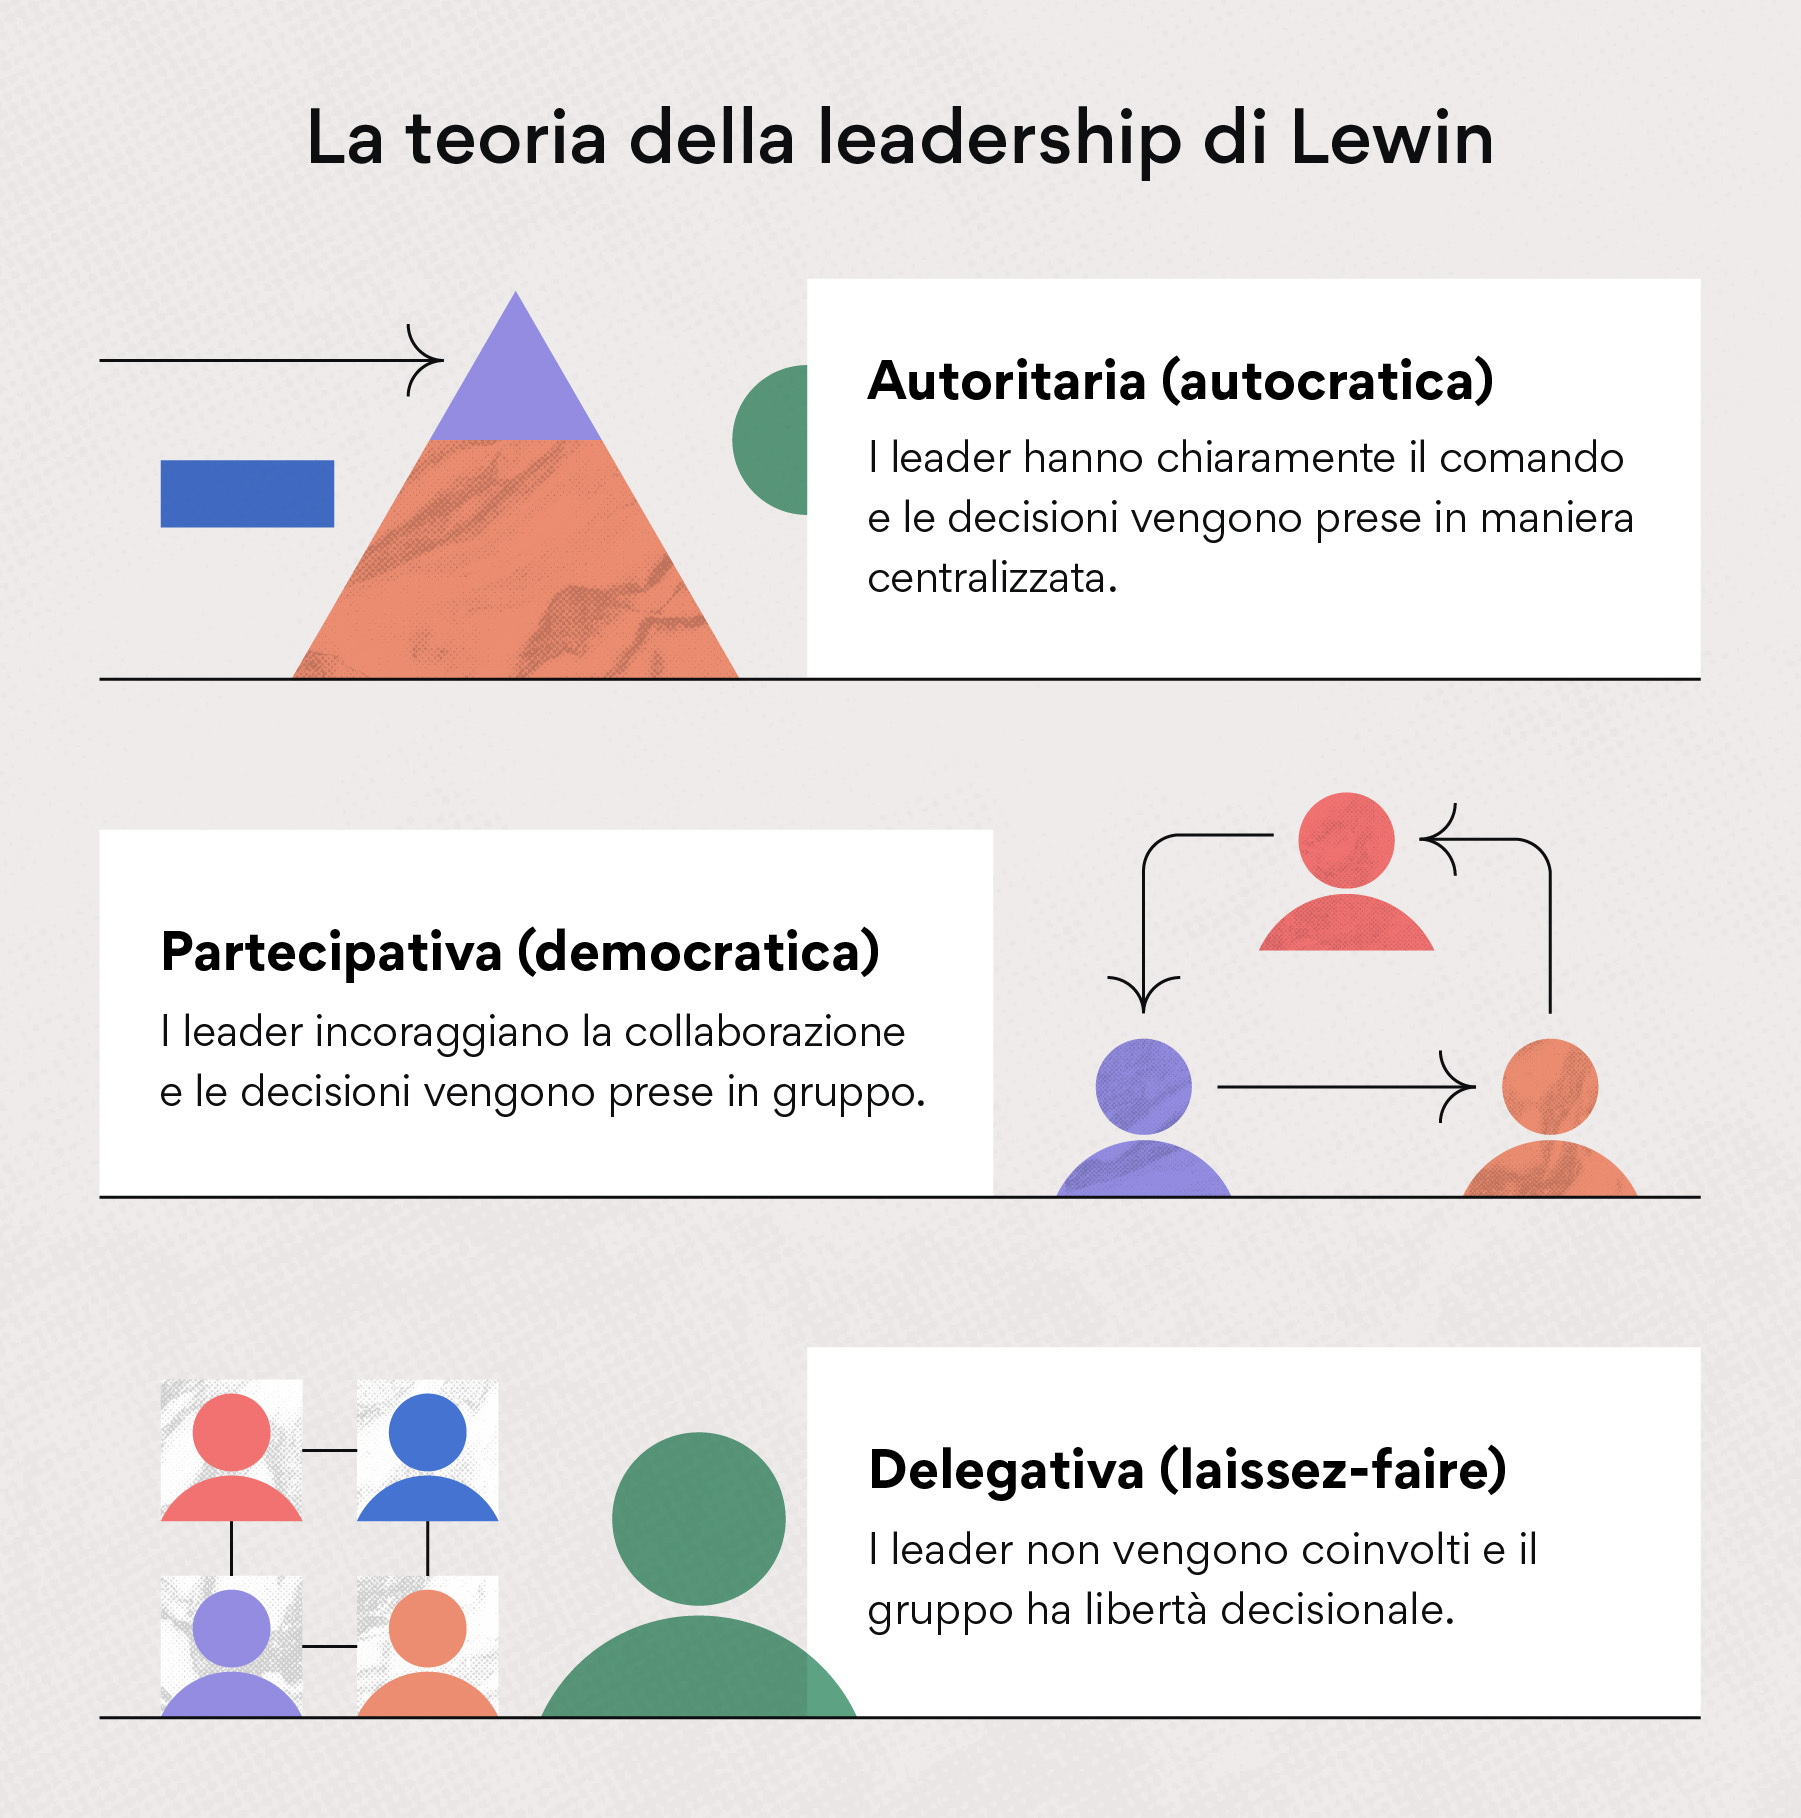 La teoria della leadership di Lewin